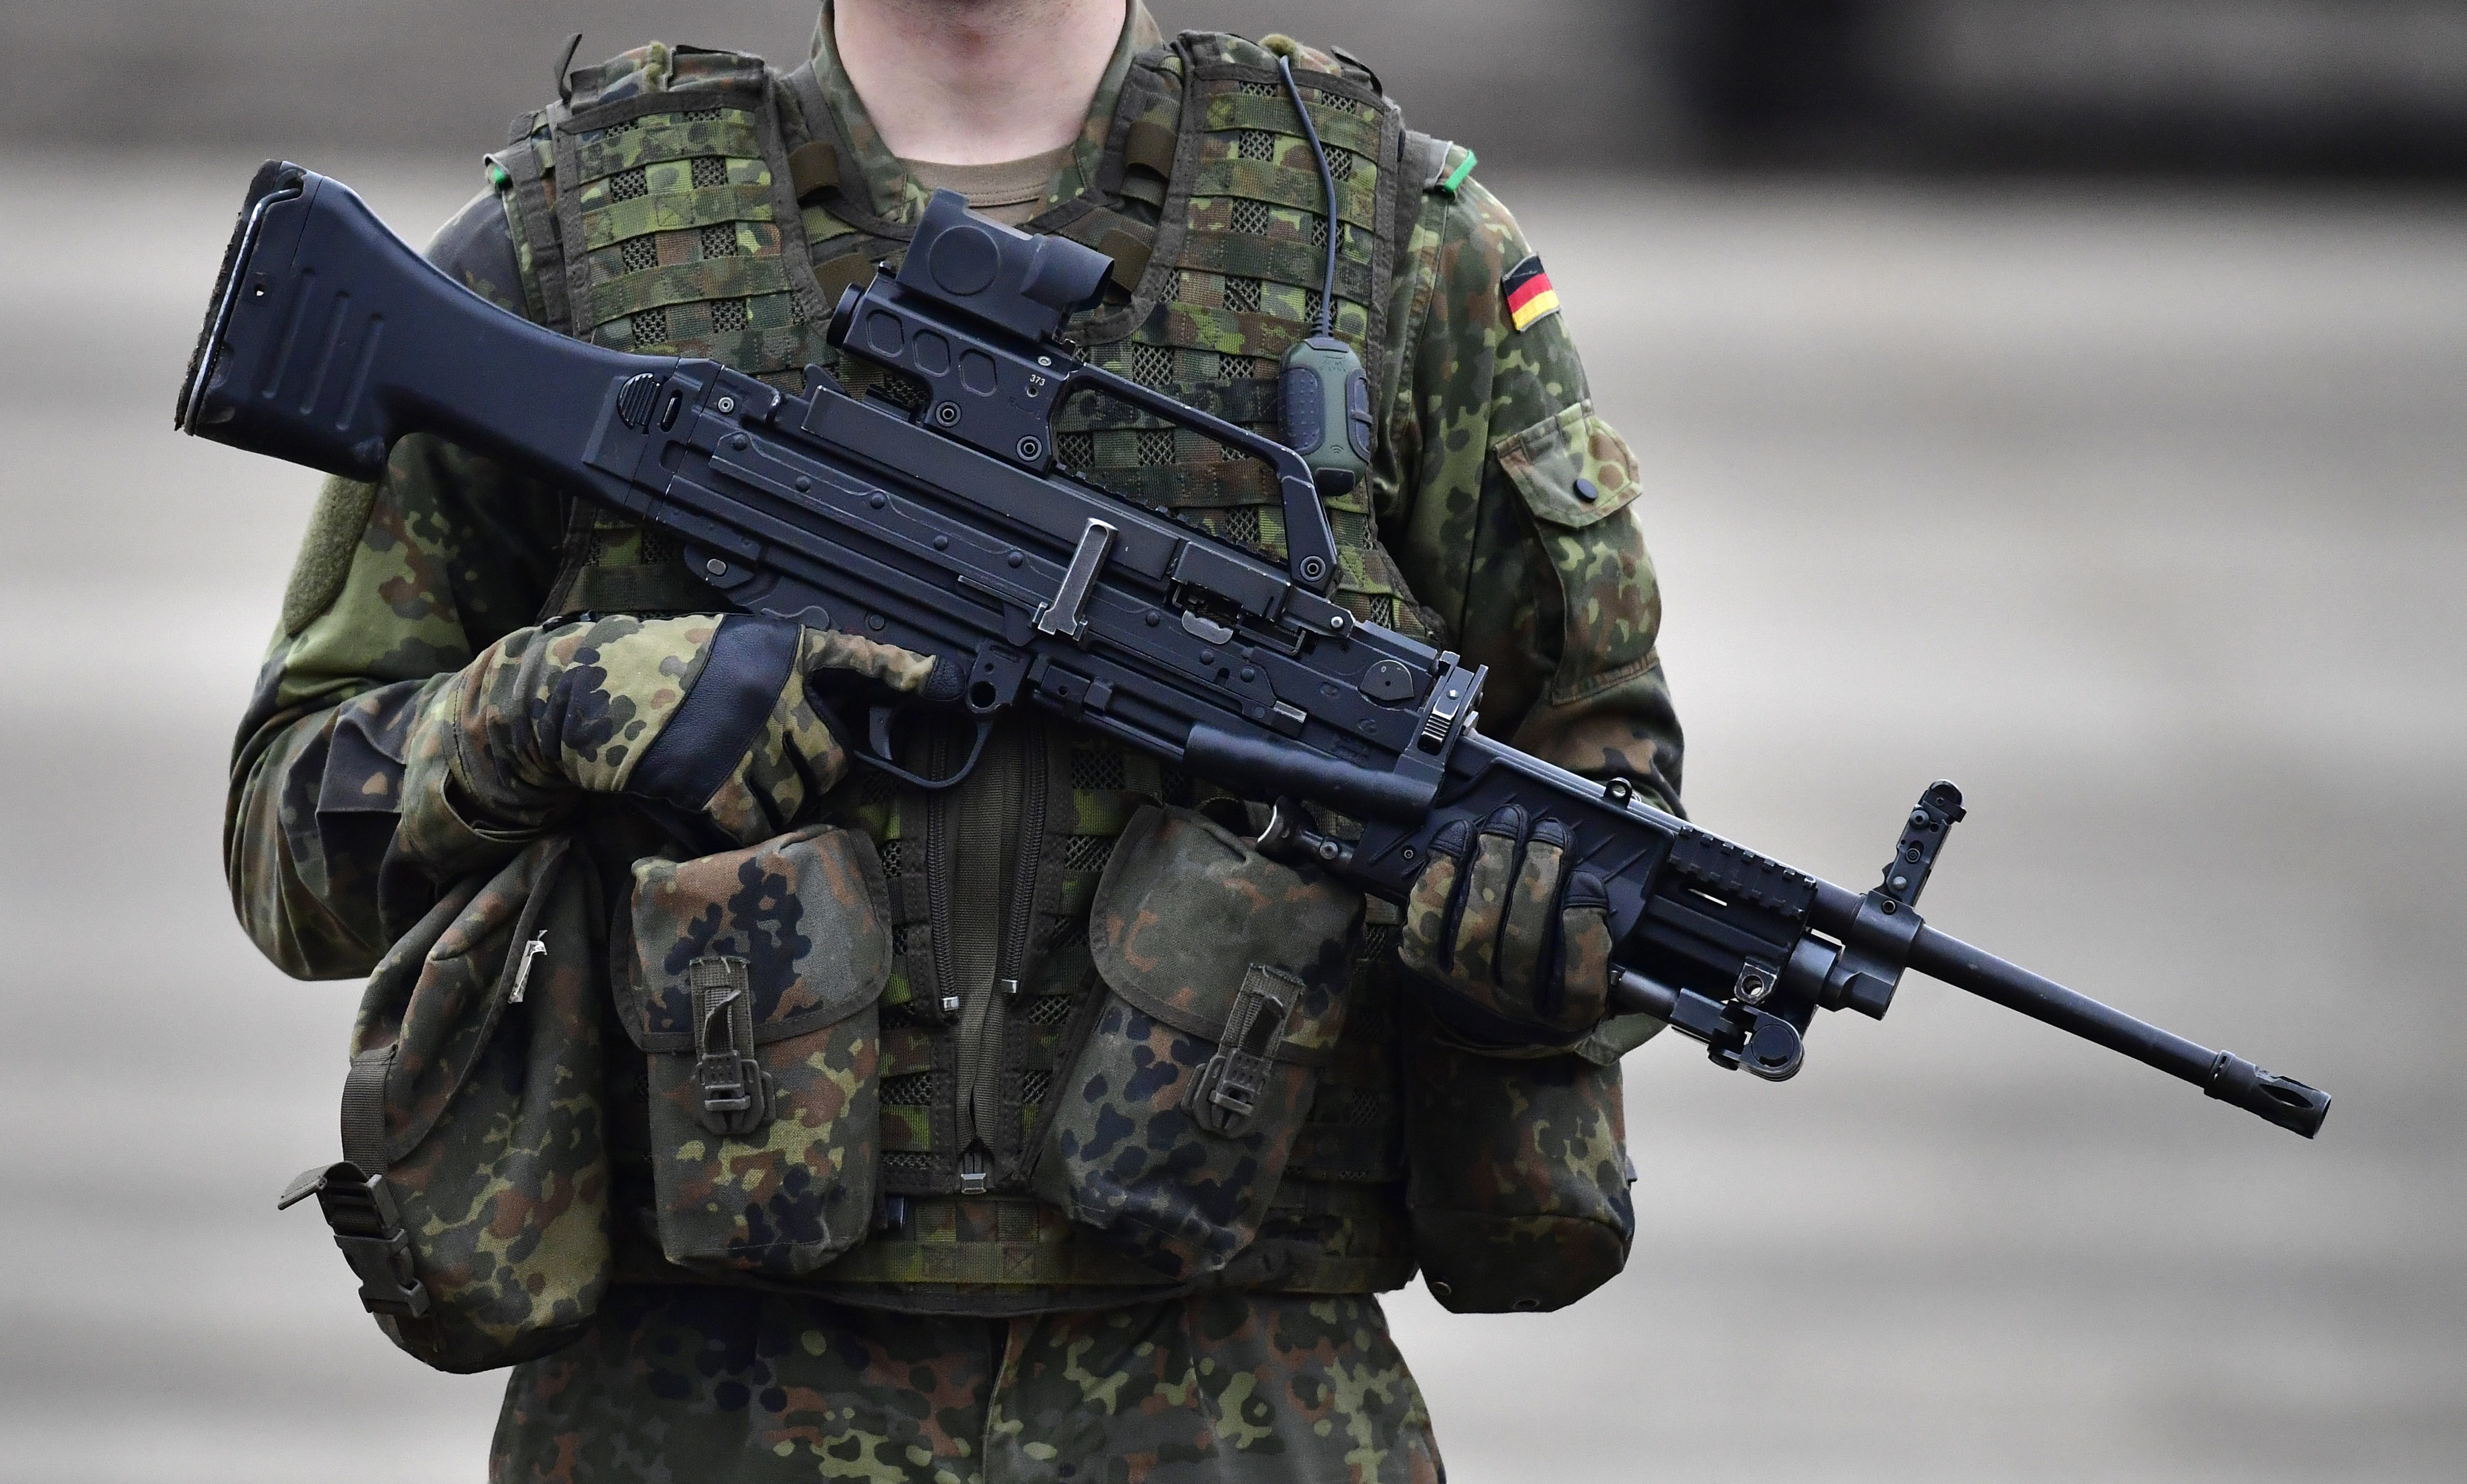 Seit 2010: 75 Gewehre und Pistolen und 57 000 Schuss Munition bei Bundeswehr entwendet